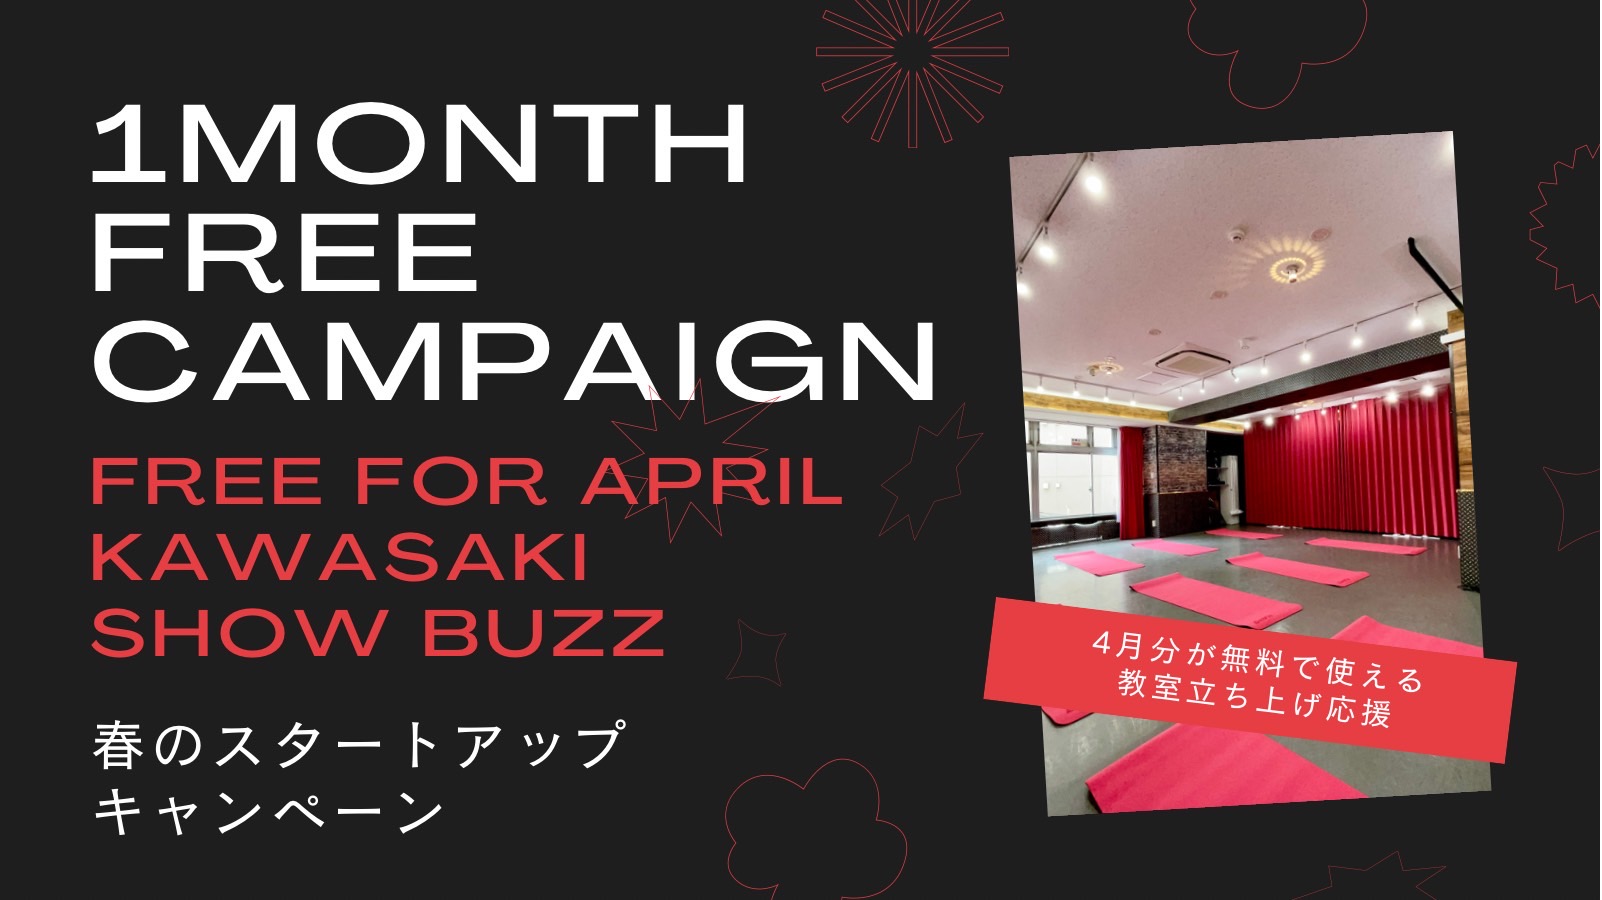 川崎ShowBuzz レンタルスタジオ 春のキャンペーン